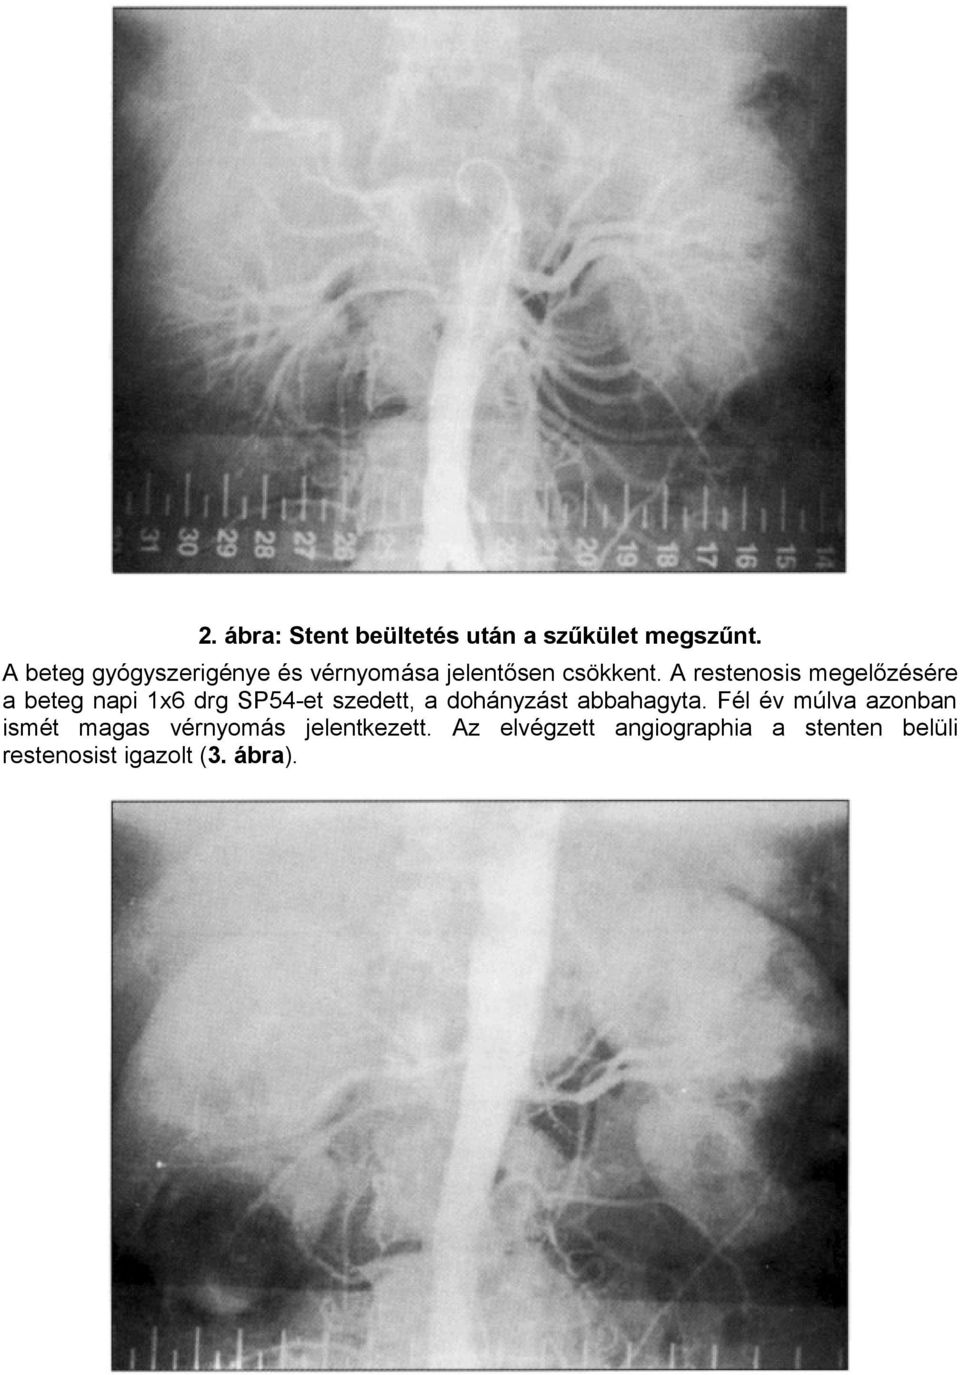 A restenosis megelőzésére a beteg napi 1x6 drg SP54-et szedett, a dohányzást